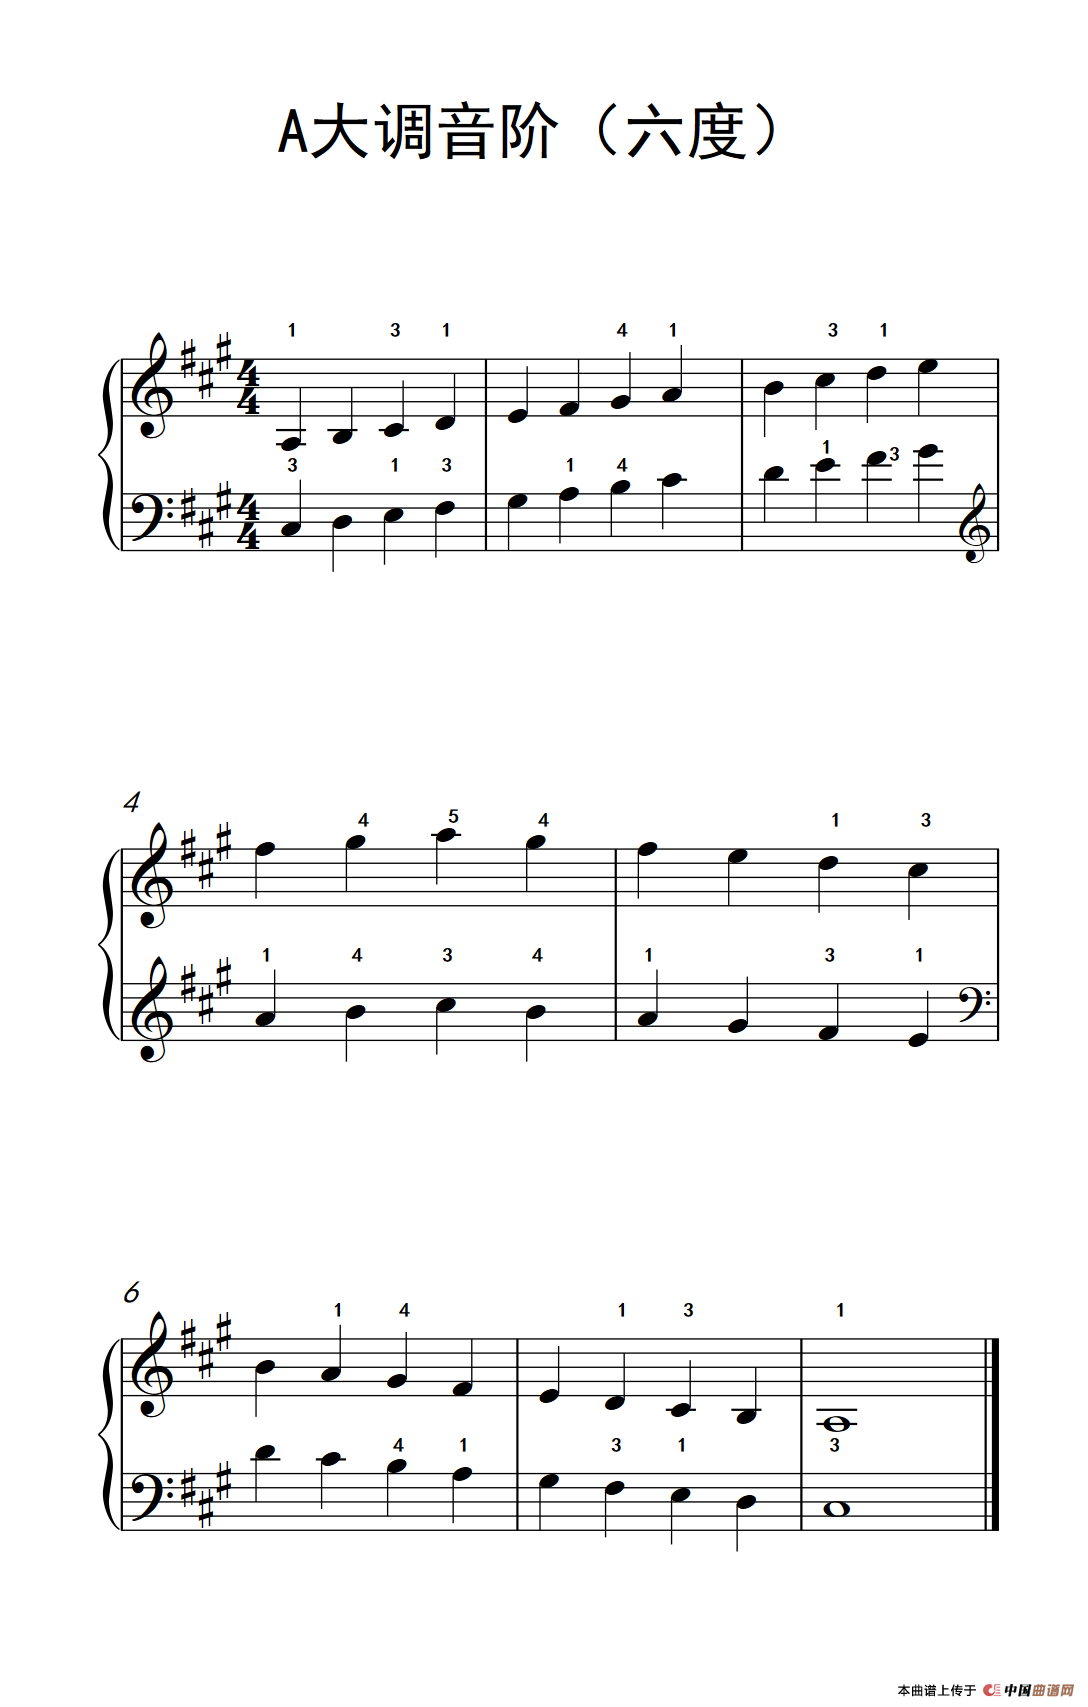 钢琴曲谱snowing歌曲_抖音歌曲钢琴曲谱数字(2)